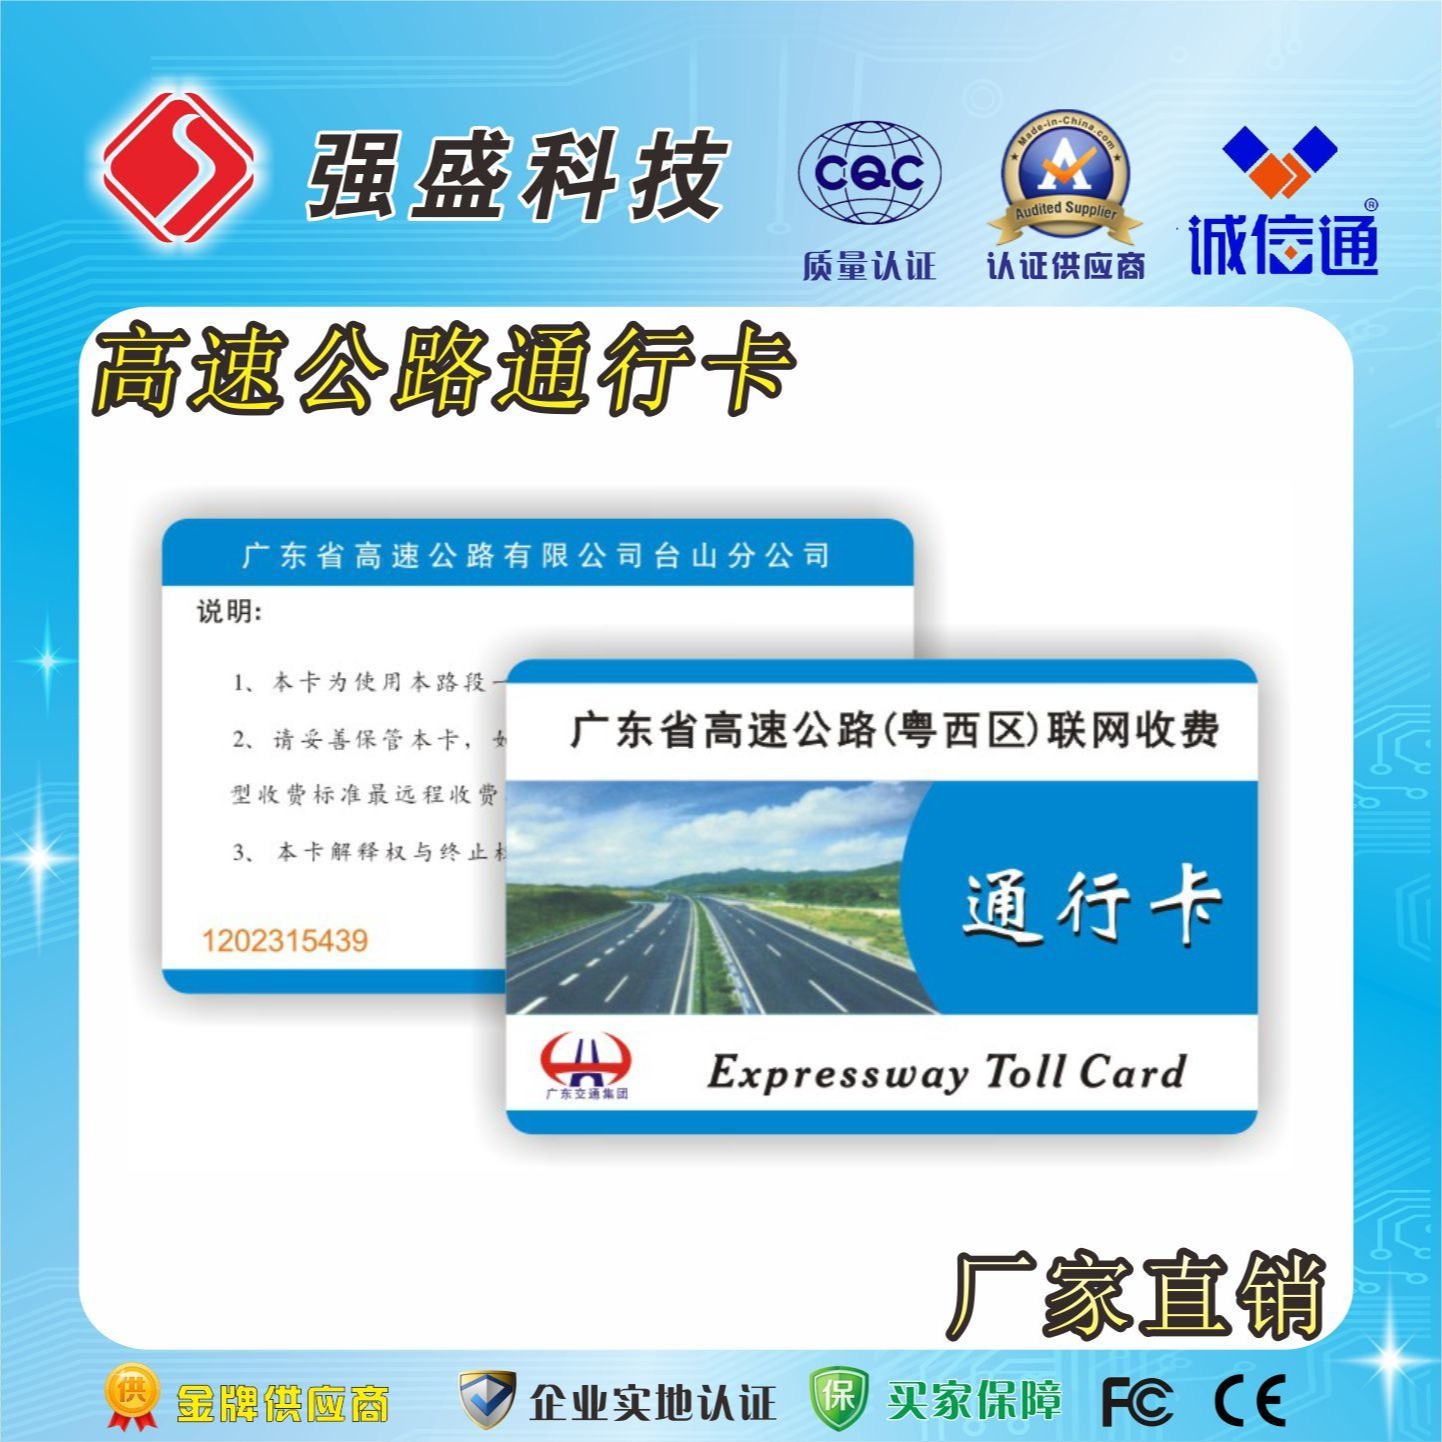 供应高速公路IC卡 高速路通行卡 高速公路收费卡制作图片